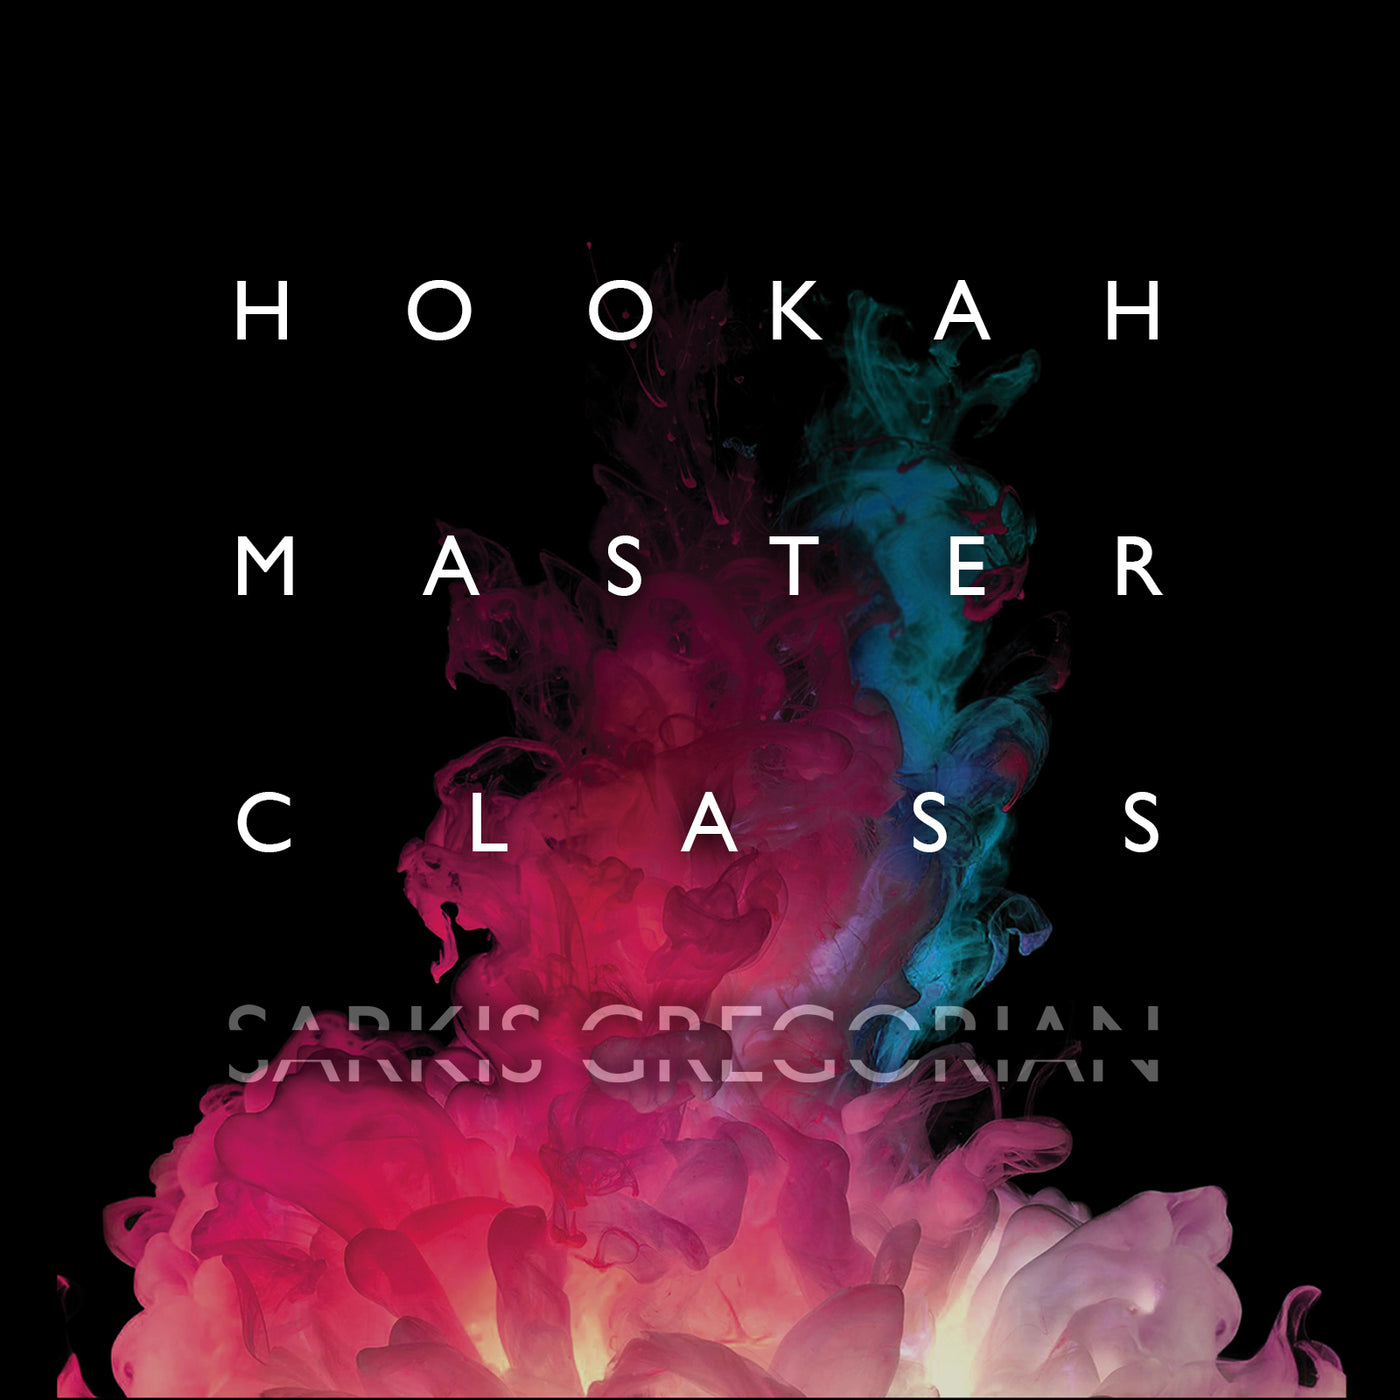 Hookah Masterclass with Sarkis Alexander Hookah UNLIMITED shisha